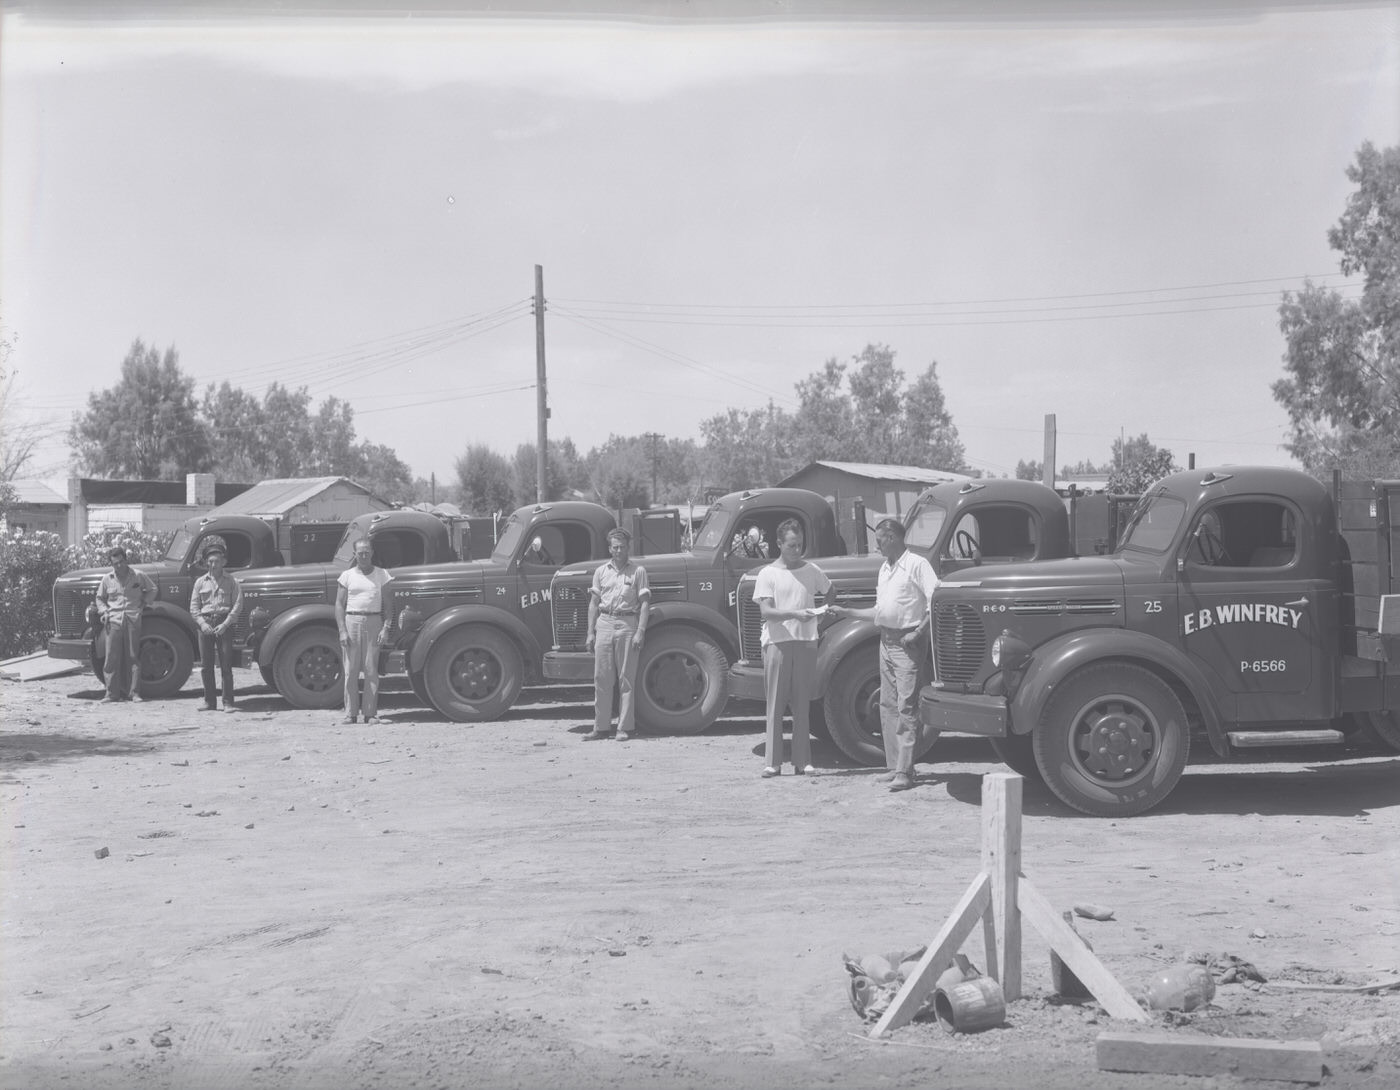 E. B. Winfrey Truck Fleet, 1946